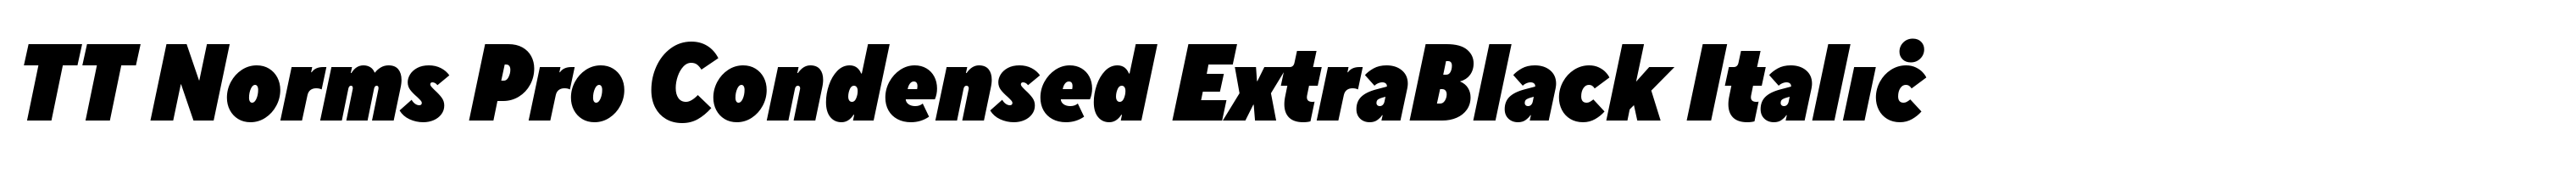 TT Norms Pro Condensed ExtraBlack Italic